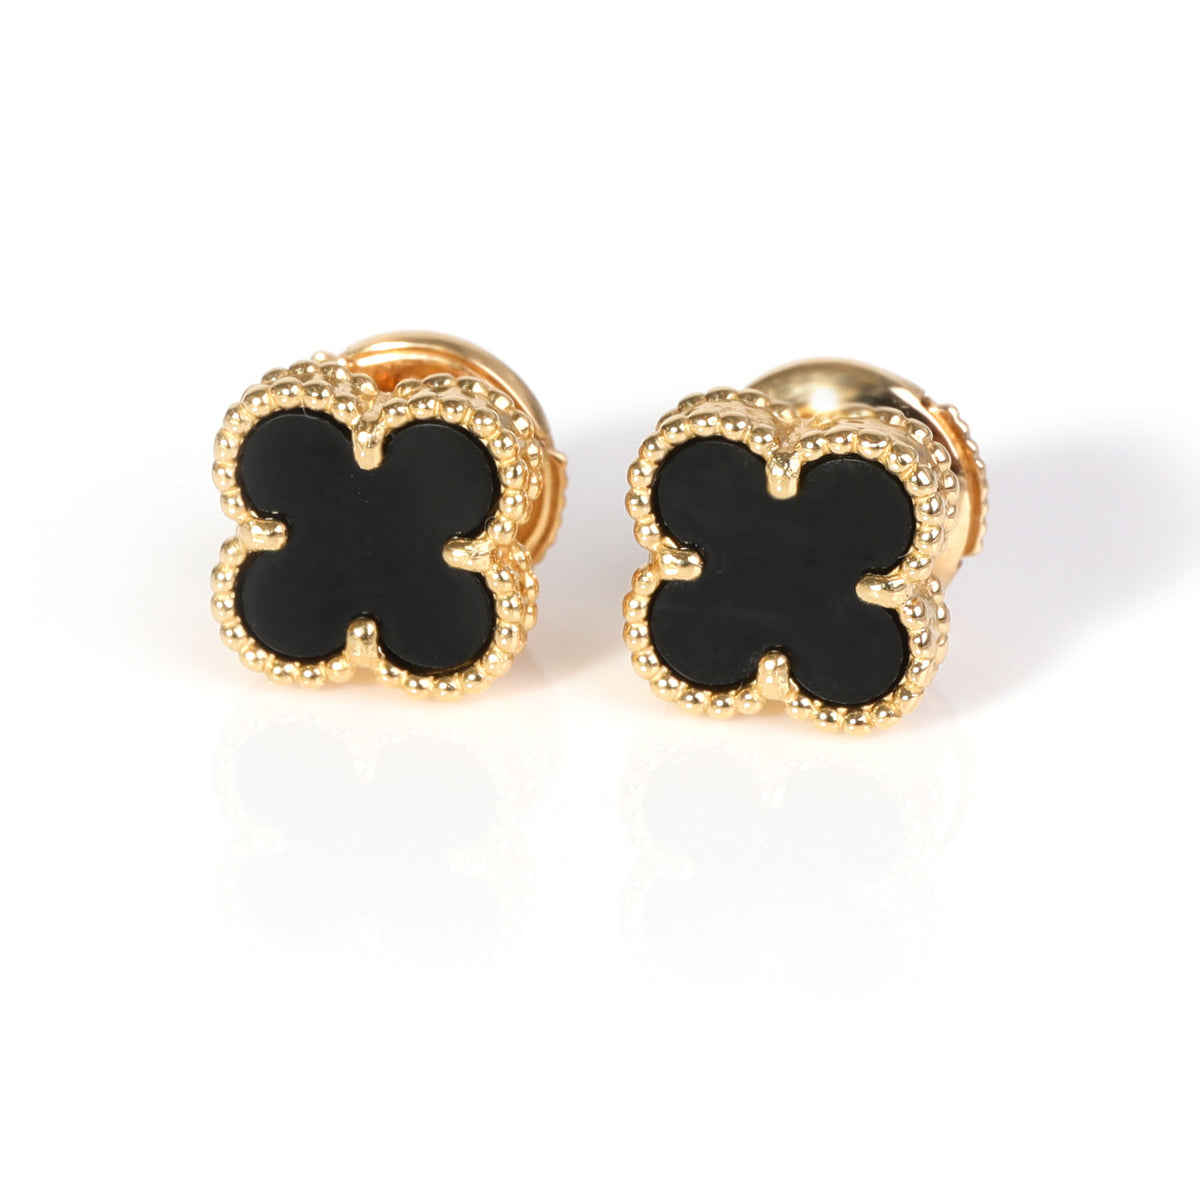 Van Cleef & Arpels Sweet Alhambra Black Onyx Stud Earrings in 18K Yellow Gold